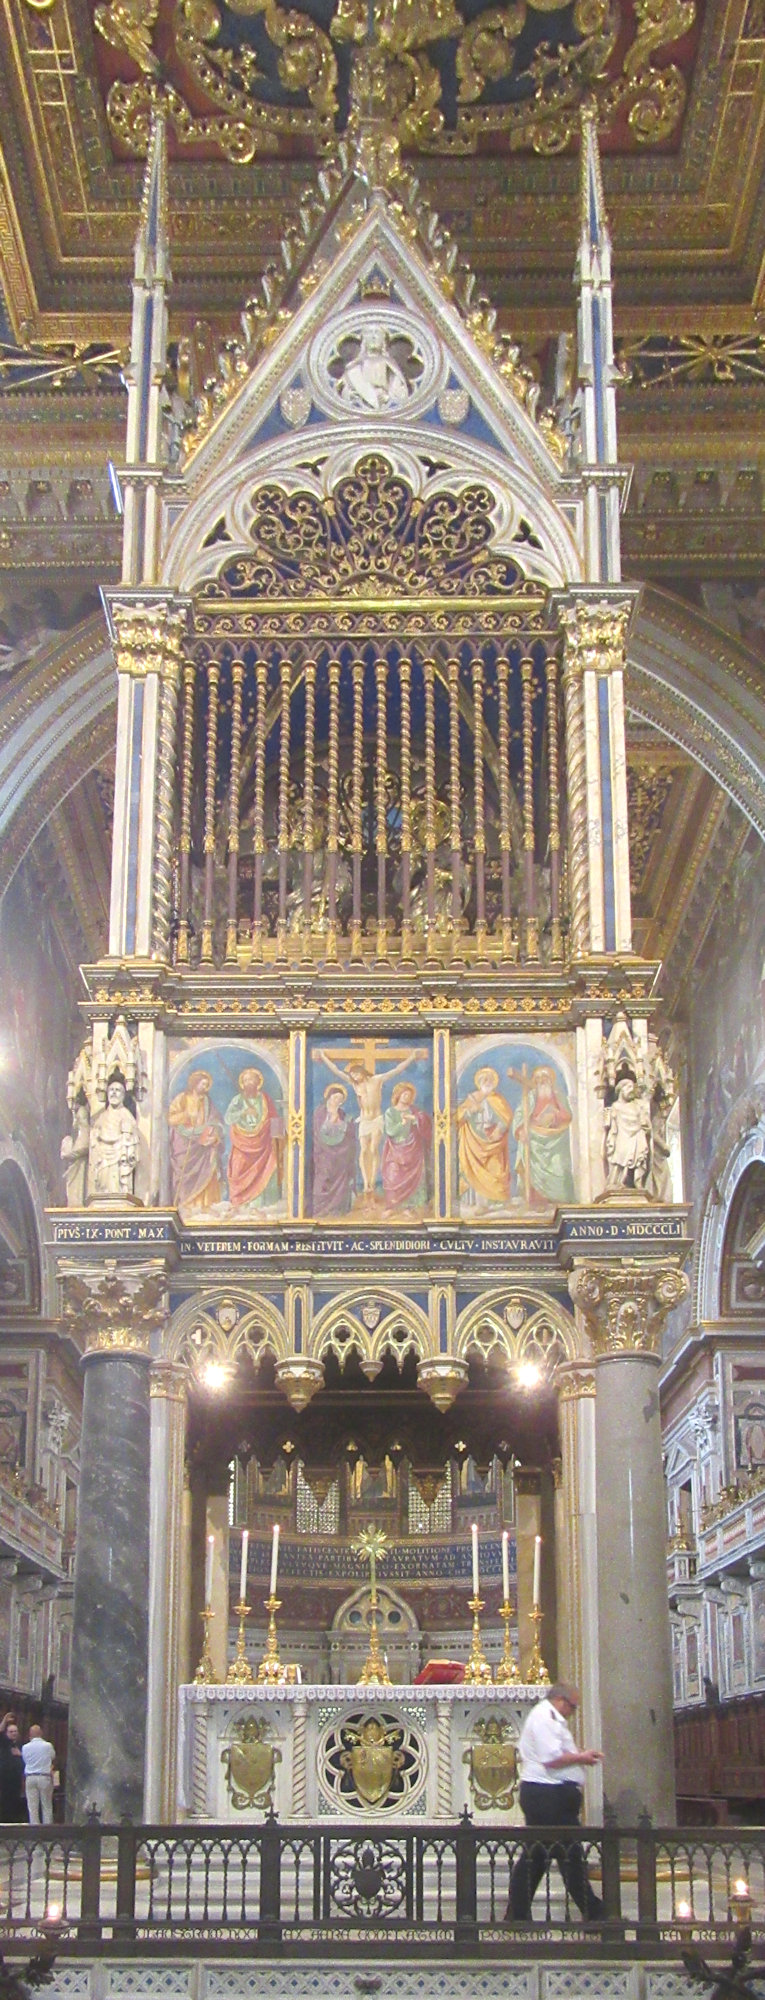 Papstaltar in der Erzbasilika San Giovanni in Laterano; er enthält den Altar
aus Holz, an dem die ersten 33 Päpste von Petrus bis Silvester I. gefeiert haben sollen sowie die - angeblichen - Kopfreliquien von Petrus und Paulus